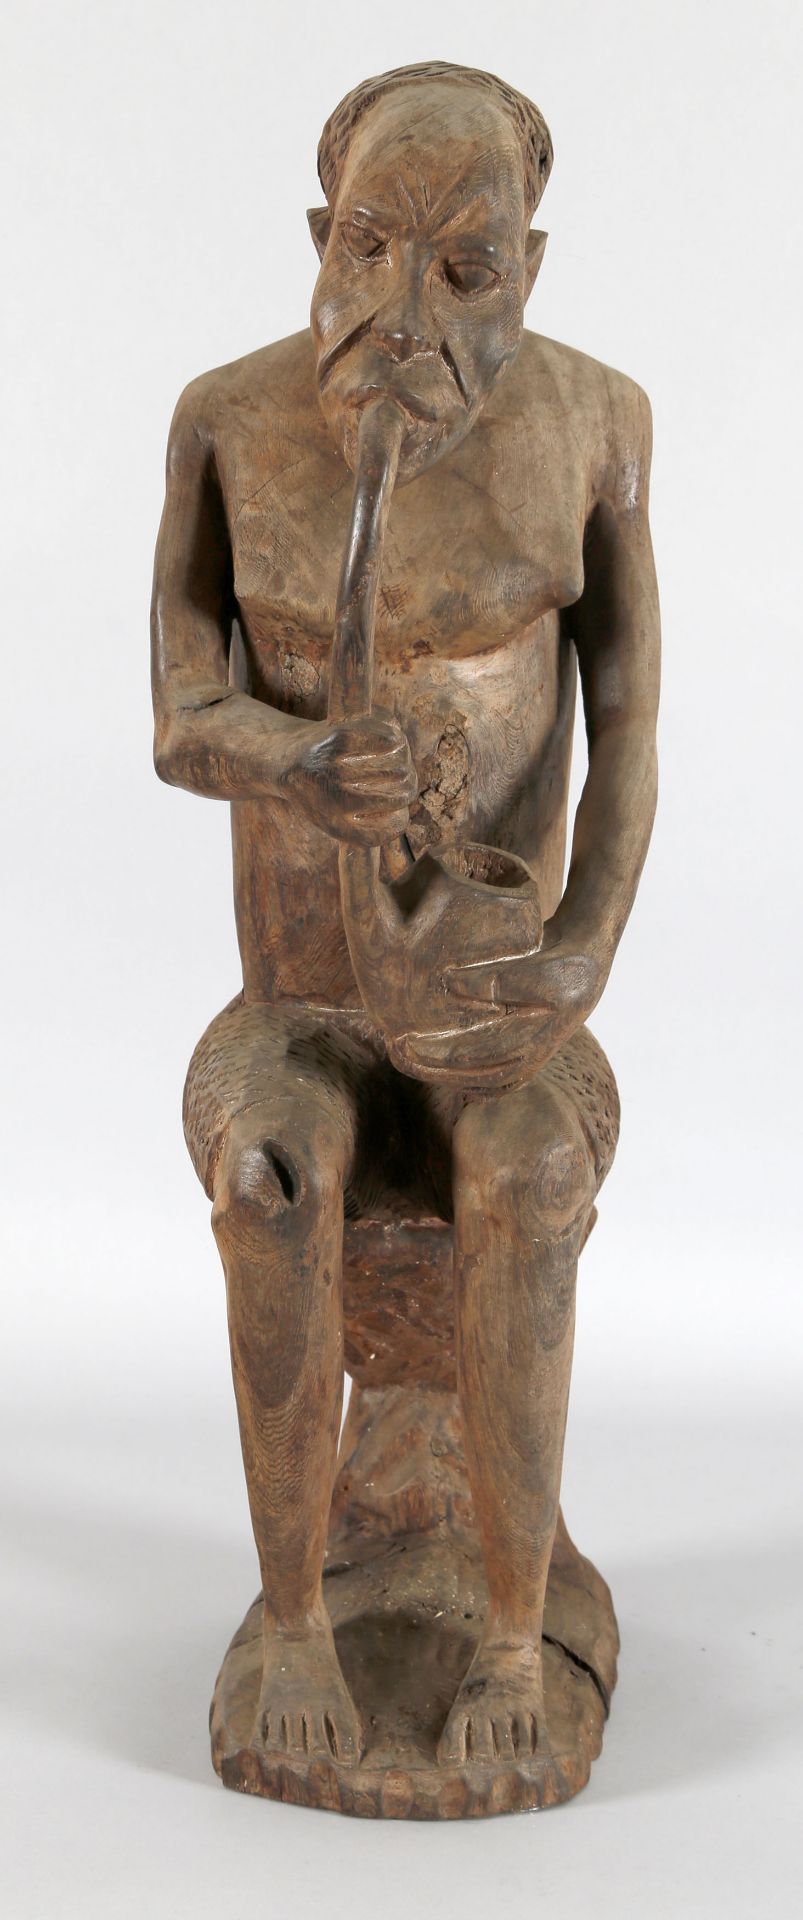 Afrikanische Figur eines Pfeifenrauchers, wohl Mbundu oder Makonde, 1960er Jahre - Image 2 of 2